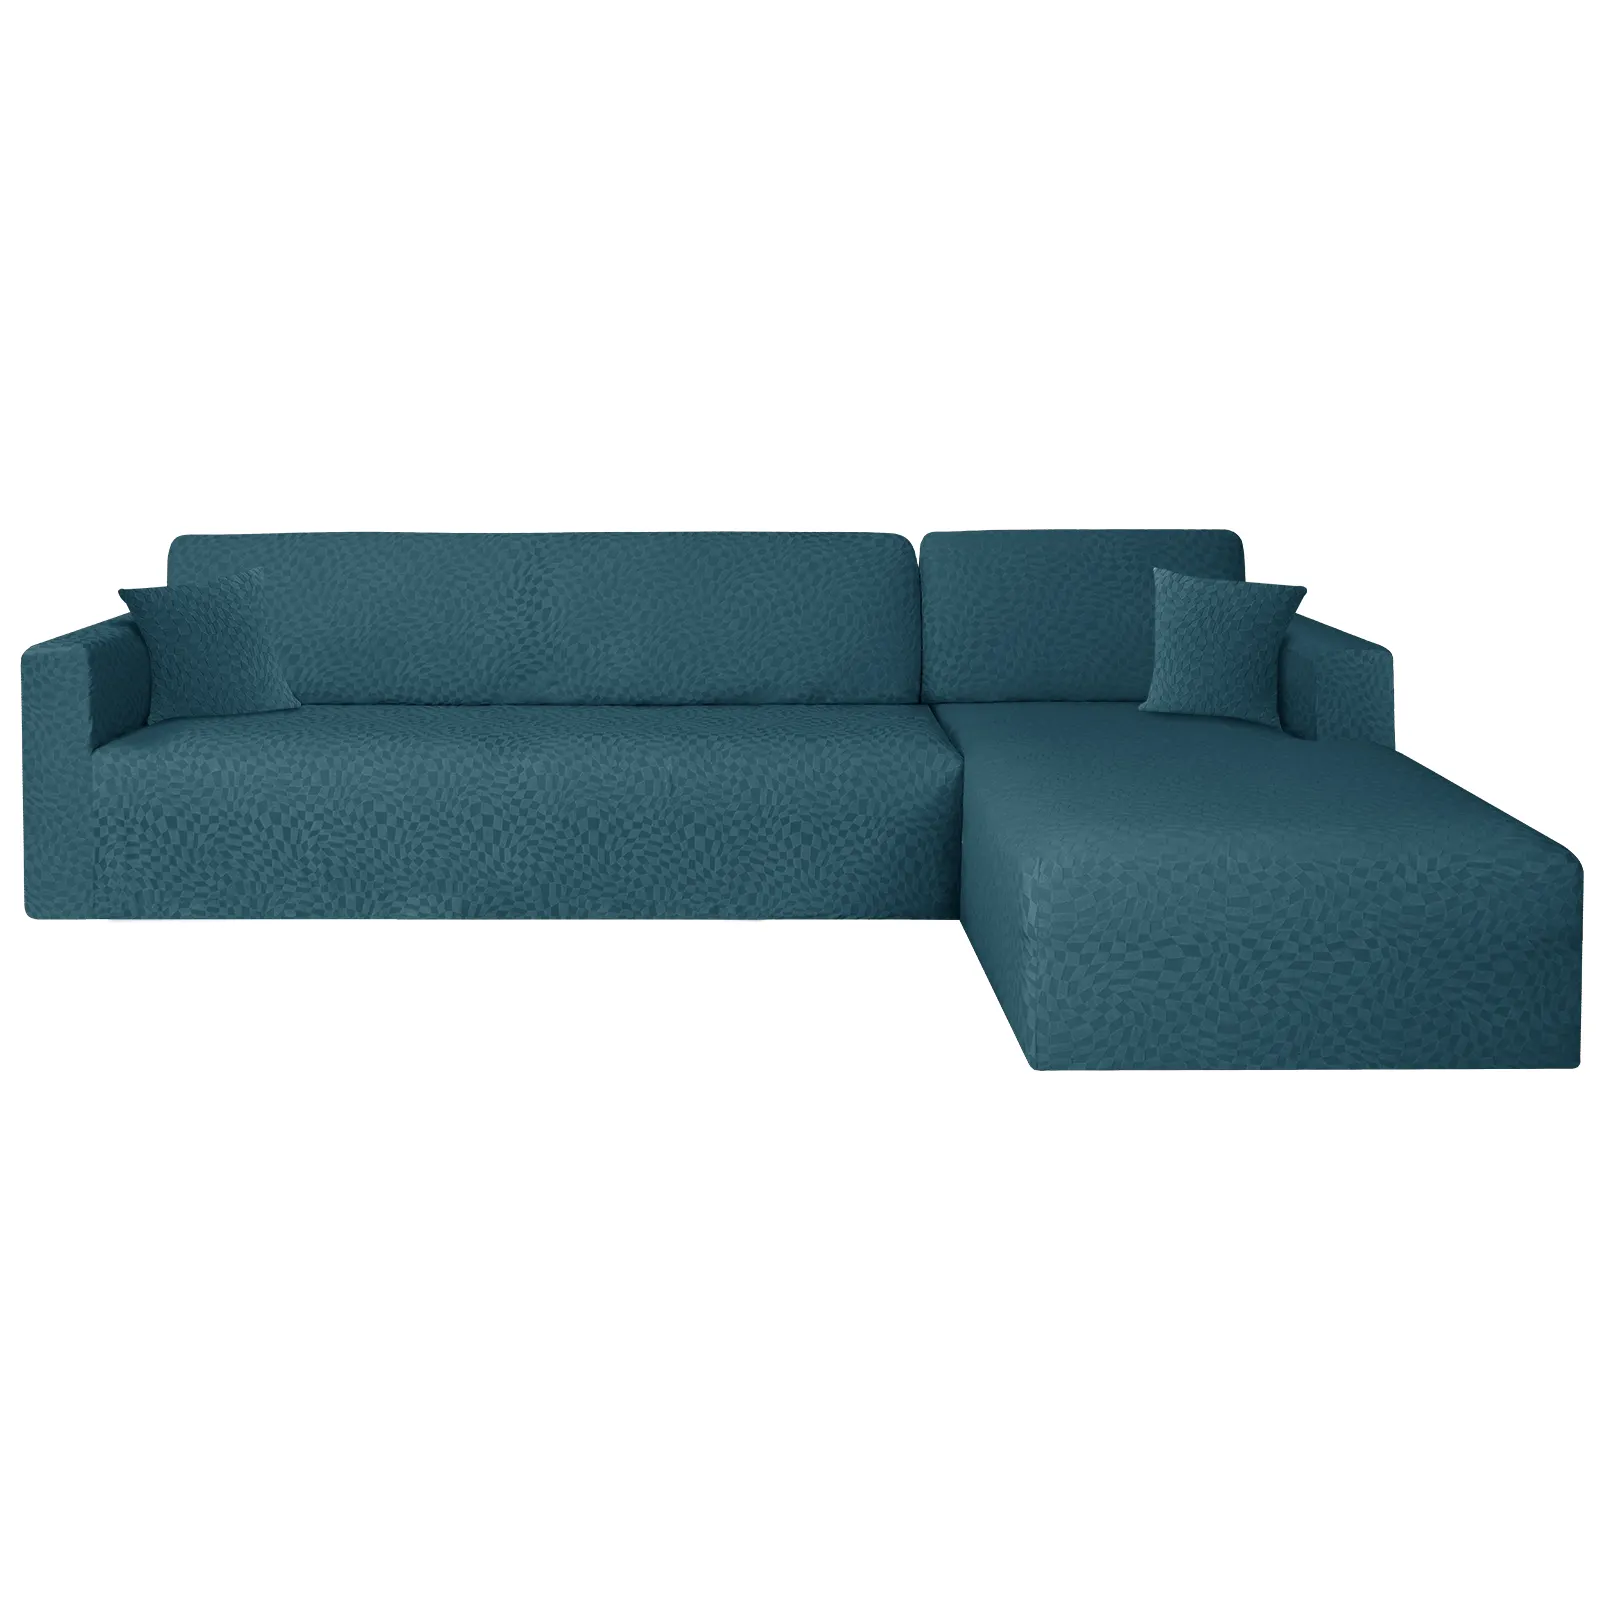 Capa de sofá seccional em forma de L para sofá, tamanho universal elástico fácil de encaixar, design moderno